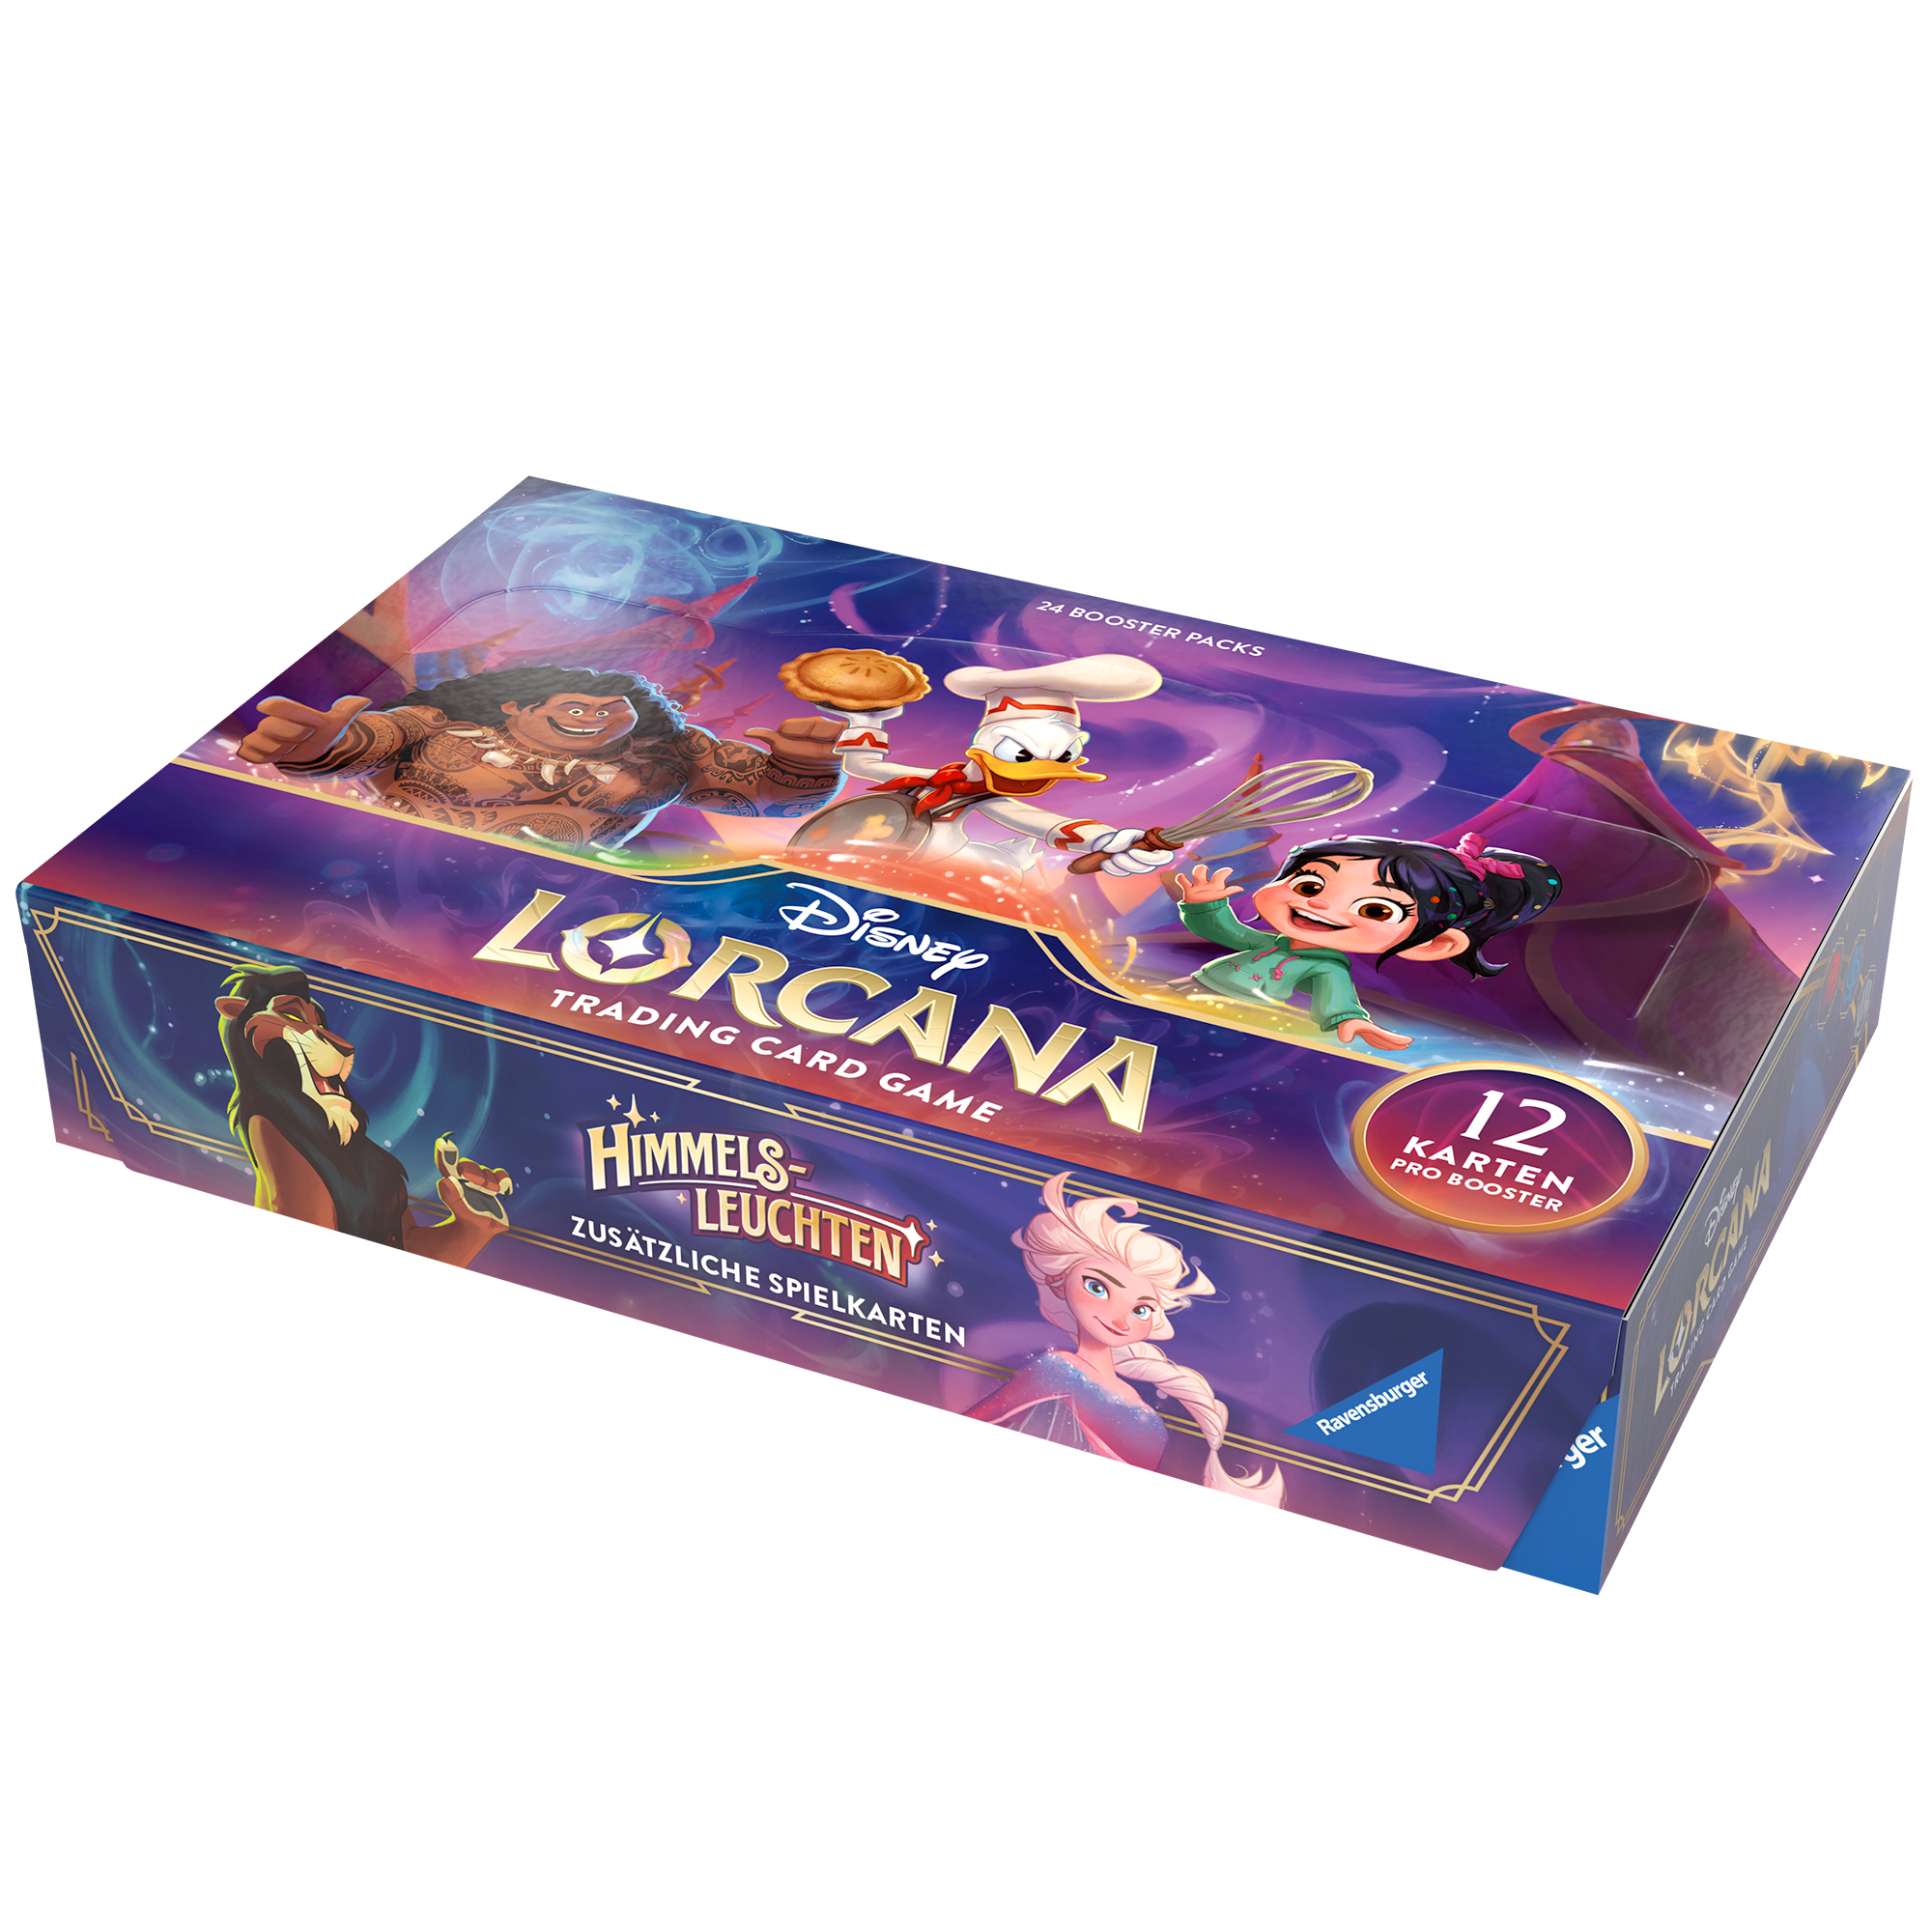 Disney Lorcana - Himmelsleuchten Booster Display (24 Packs) - DE